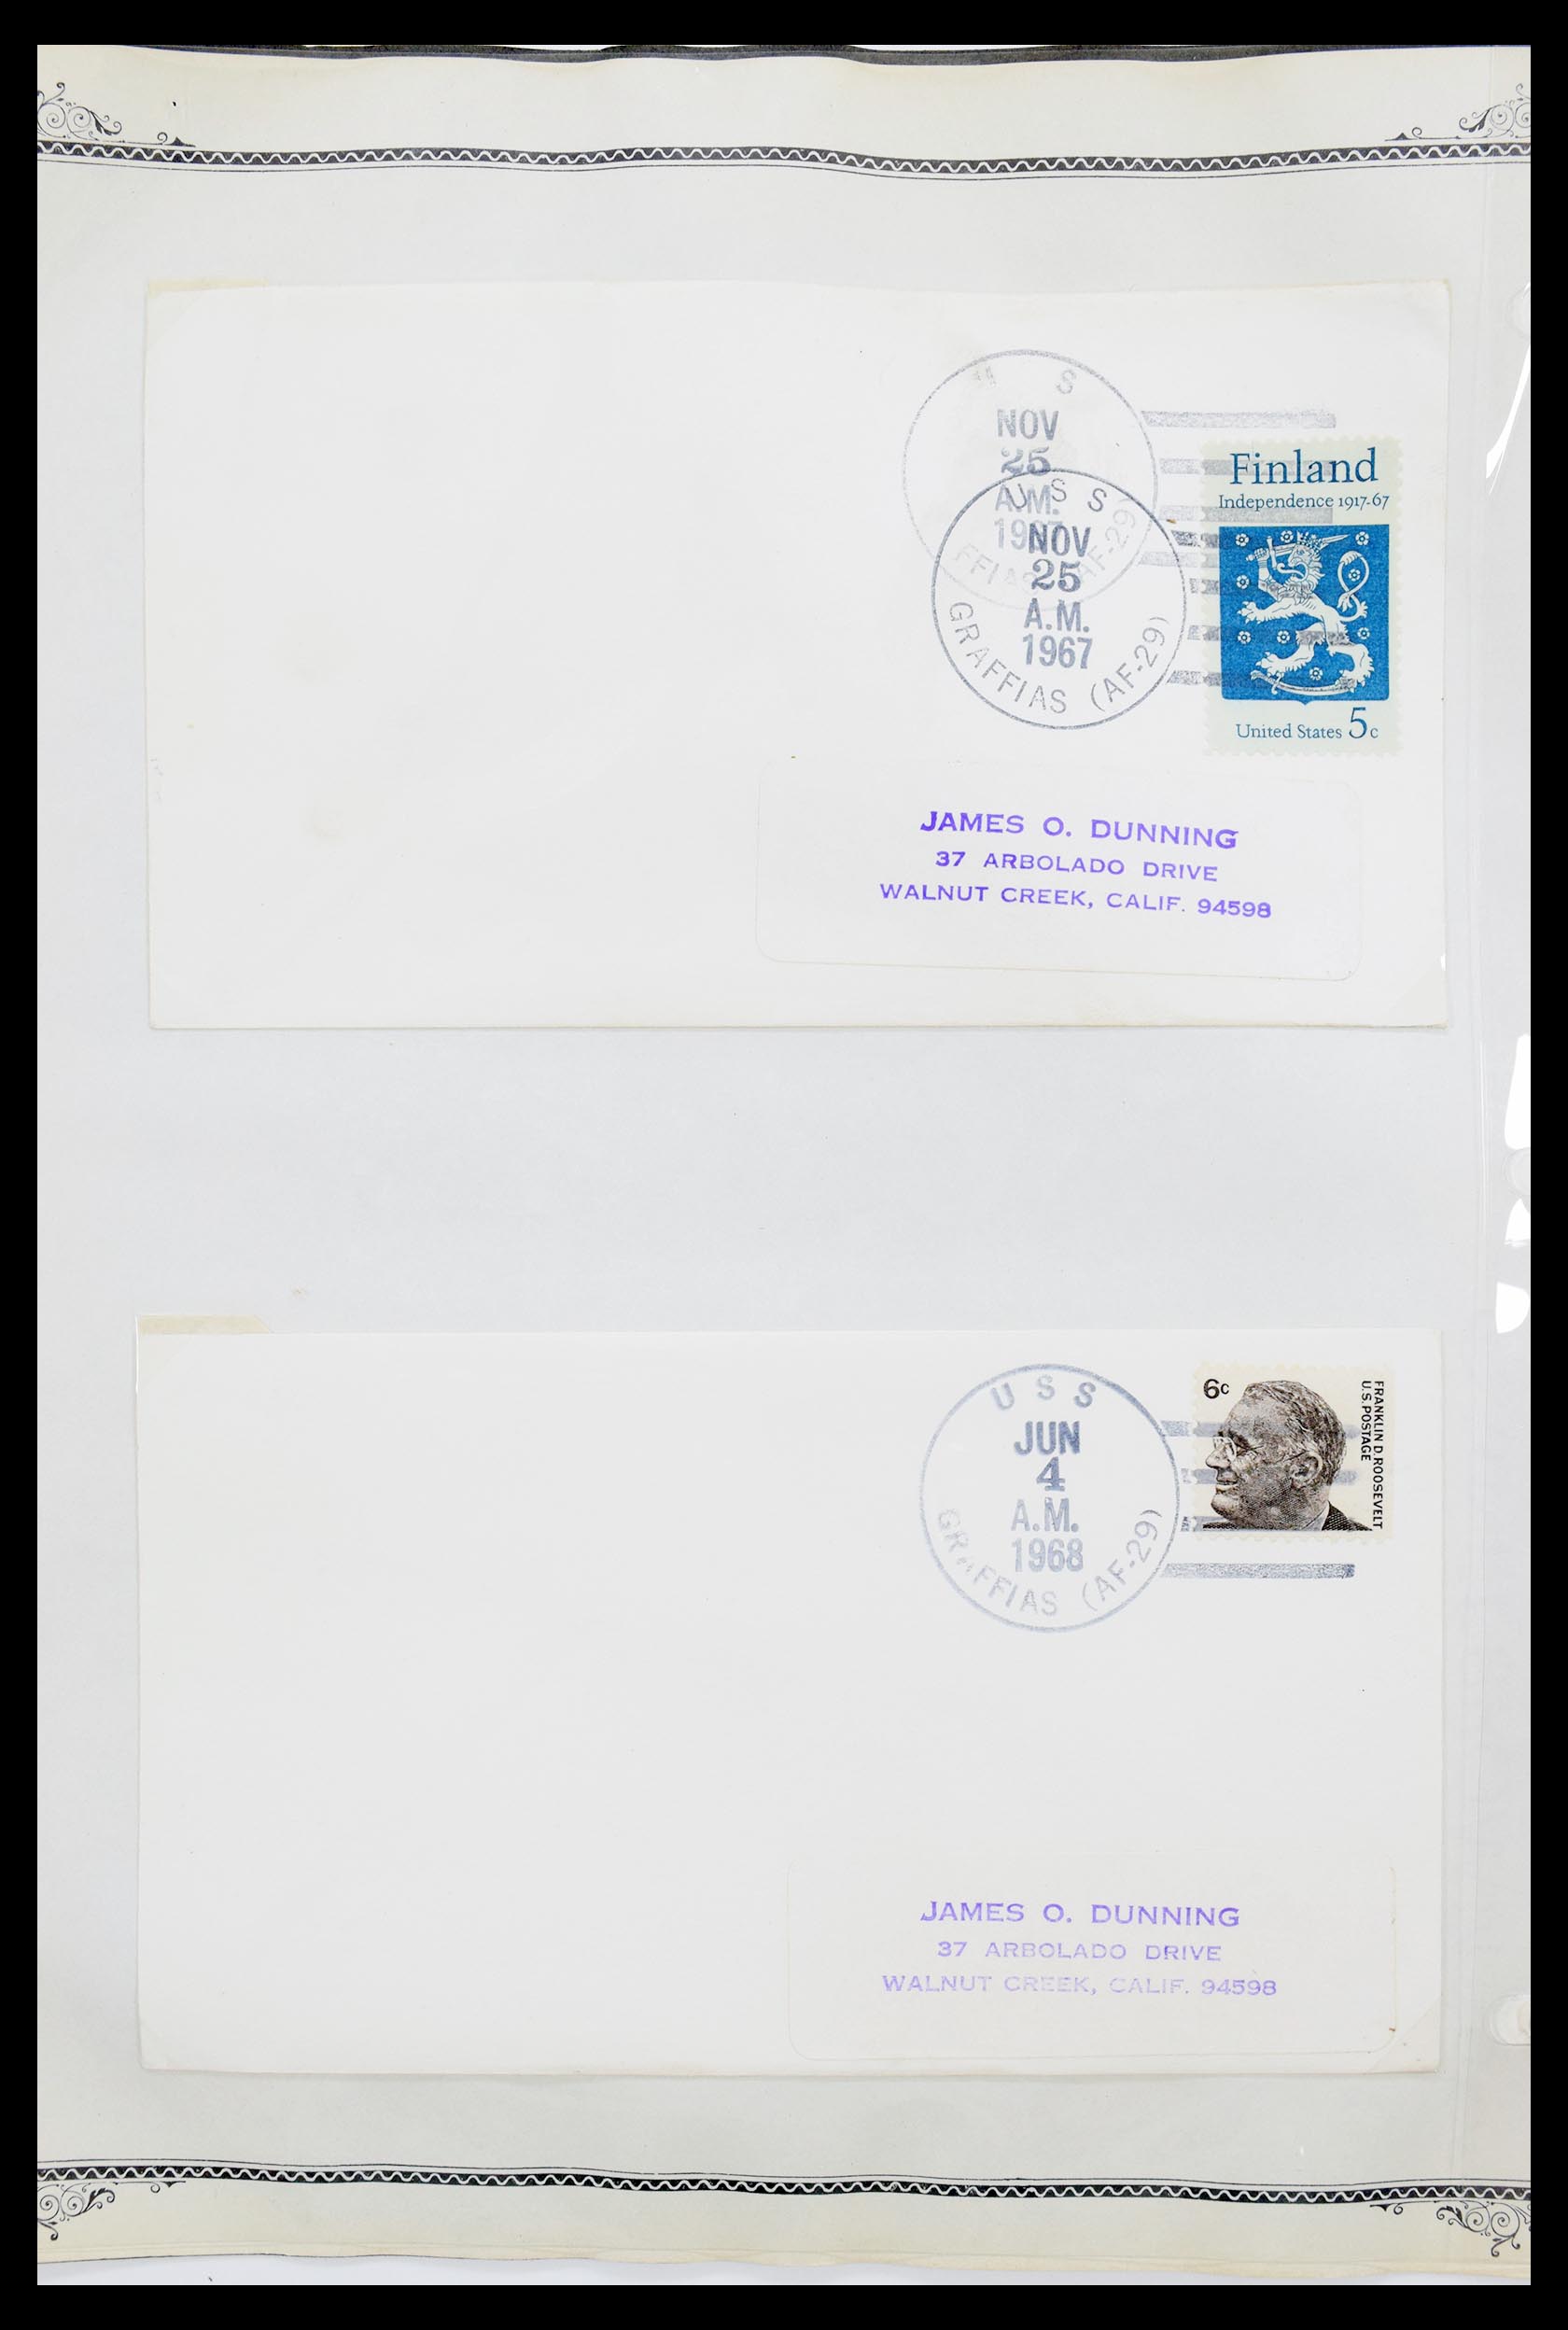 30341 025 - 30341 USA scheepspost brieven 1930-1970.